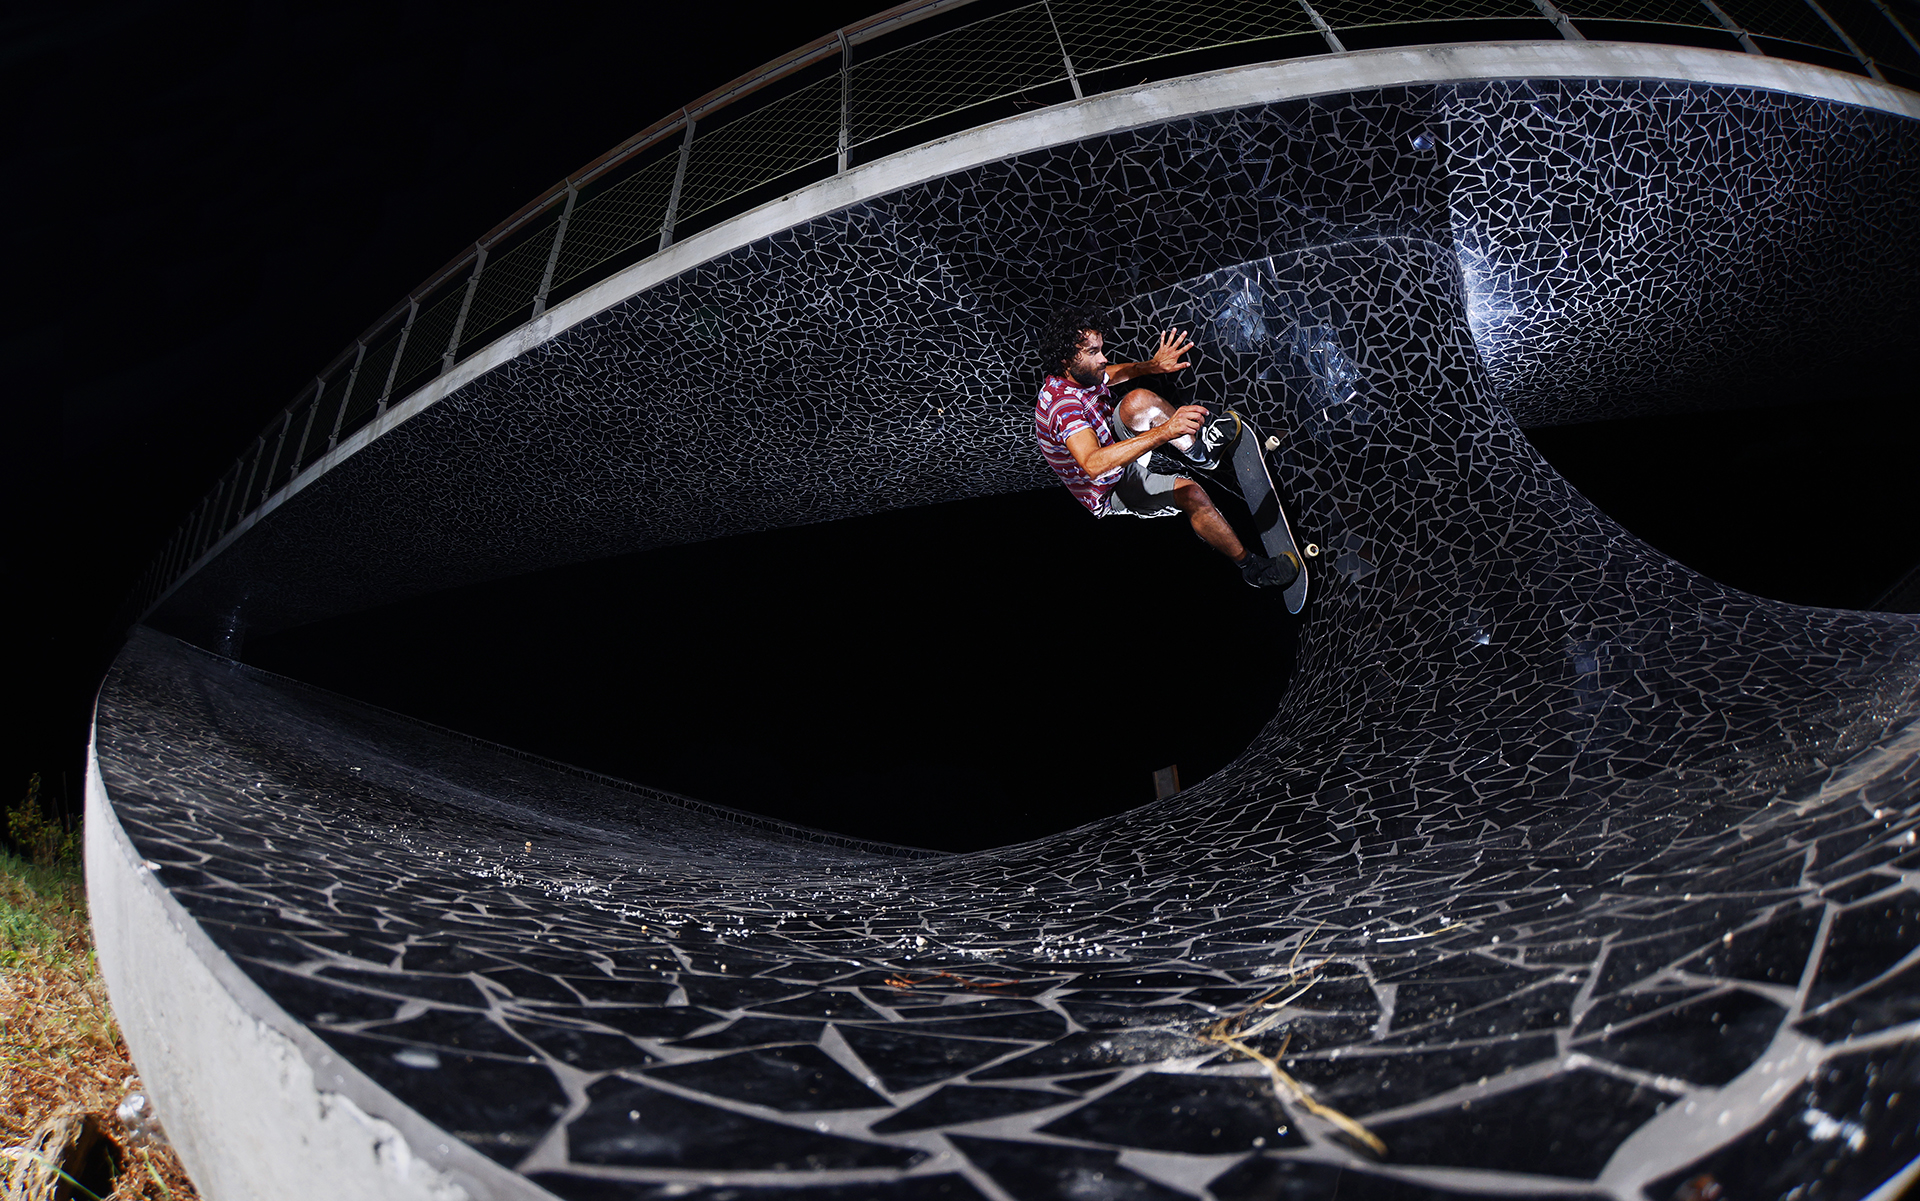 Skateboarding_Life_Renato_Lainho_com (53p)